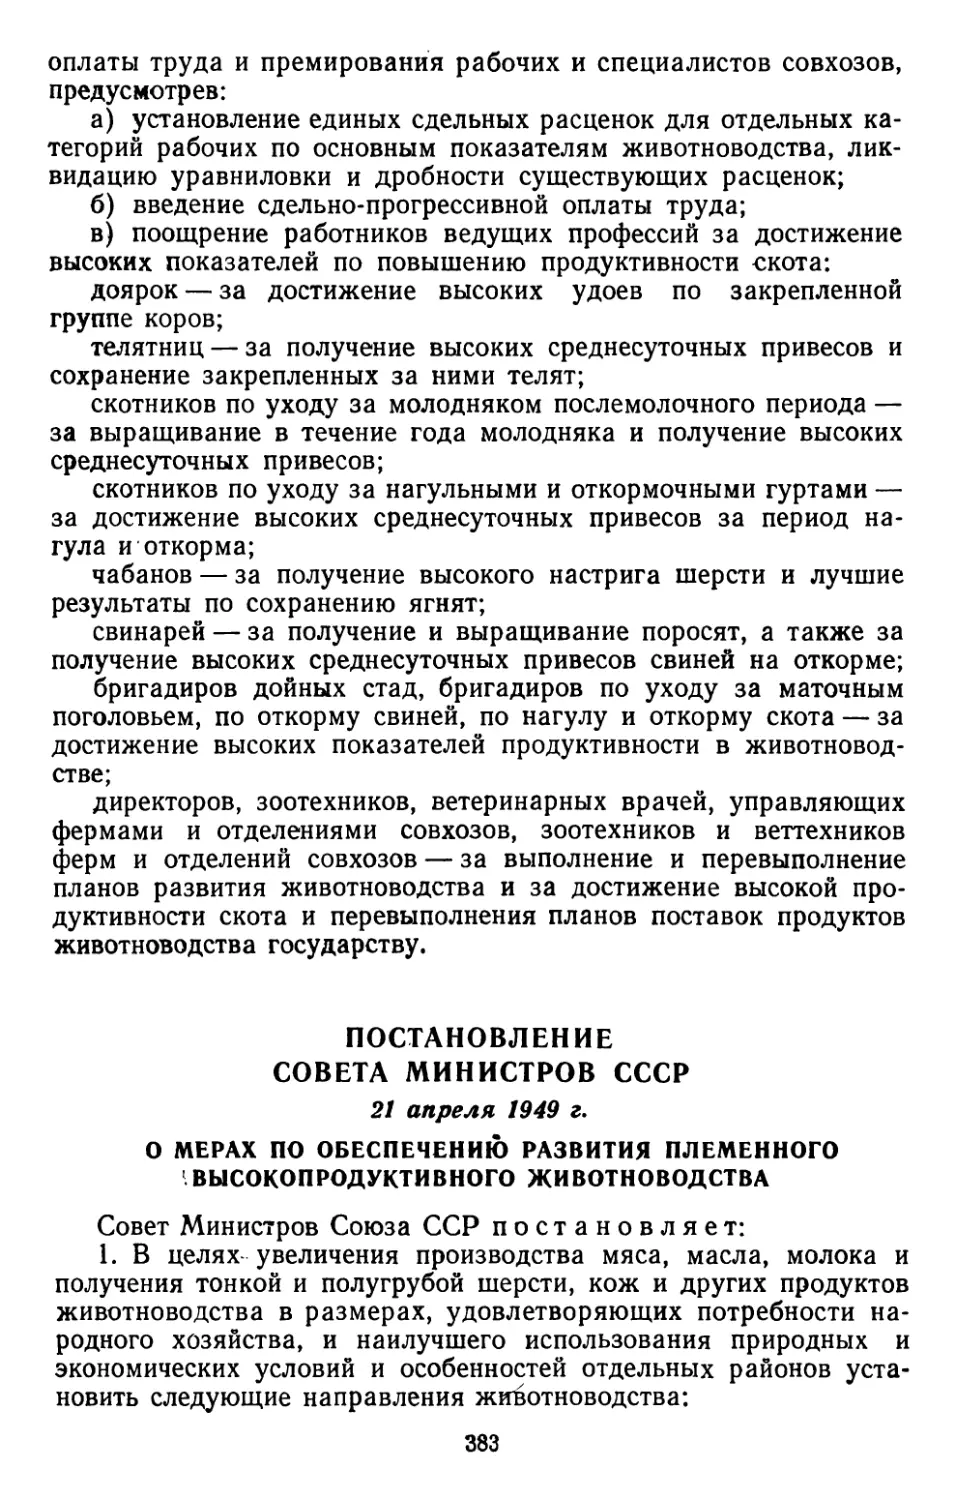 Постановление Совета Министров СССР, 21 апреля 1949 г. О мерах по обеспечению развития племенного высокопродуктивного животноводства